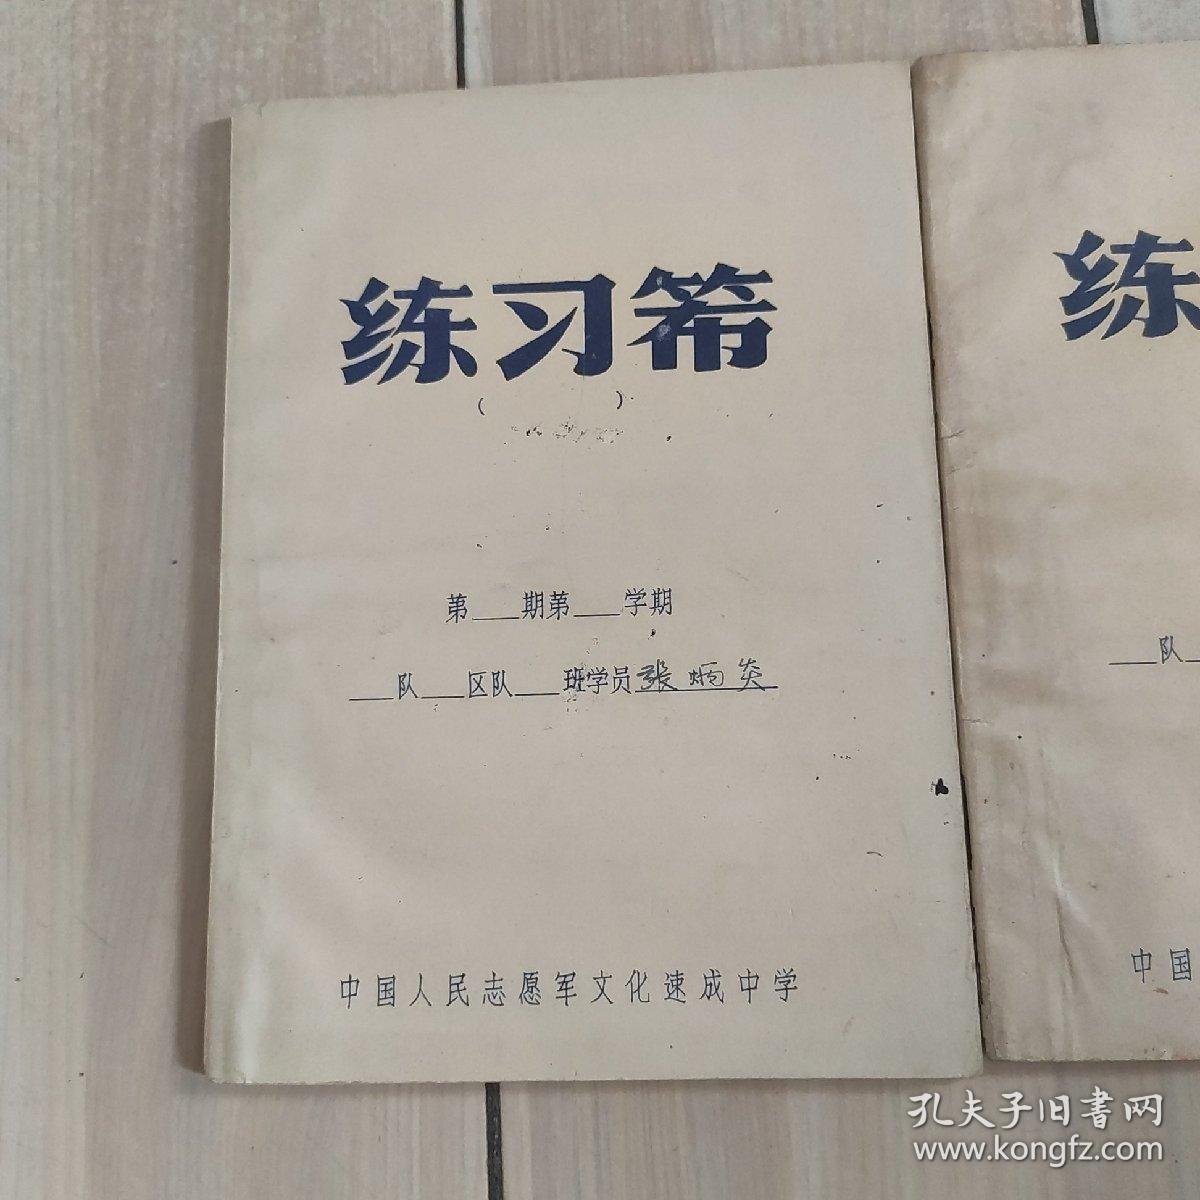 中国人民志愿军文化速成中学练习簿(2本)